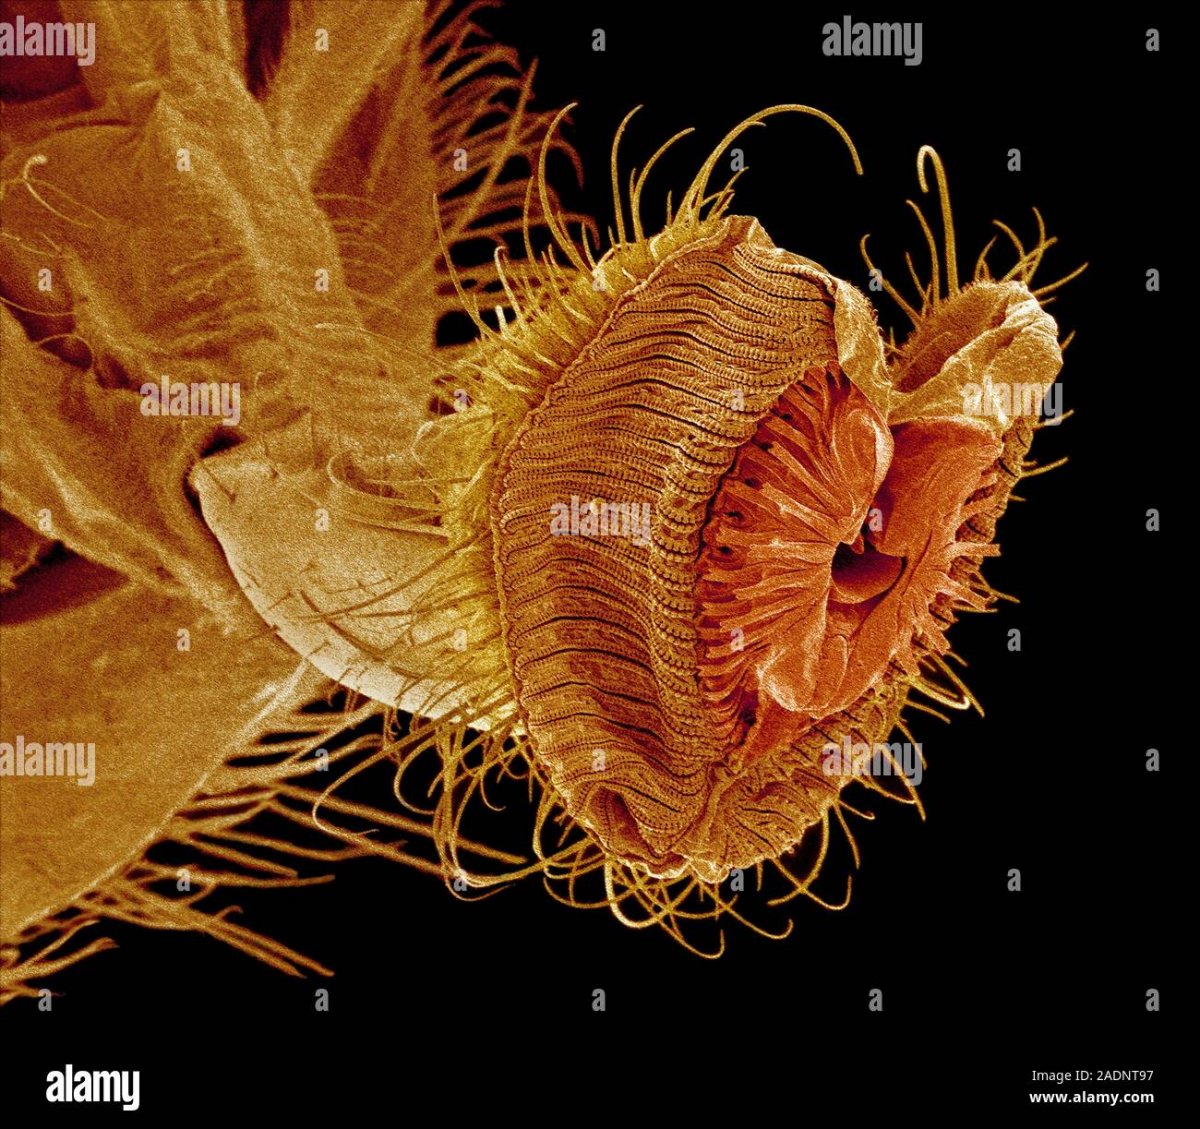 Рот мухи под микроскопом